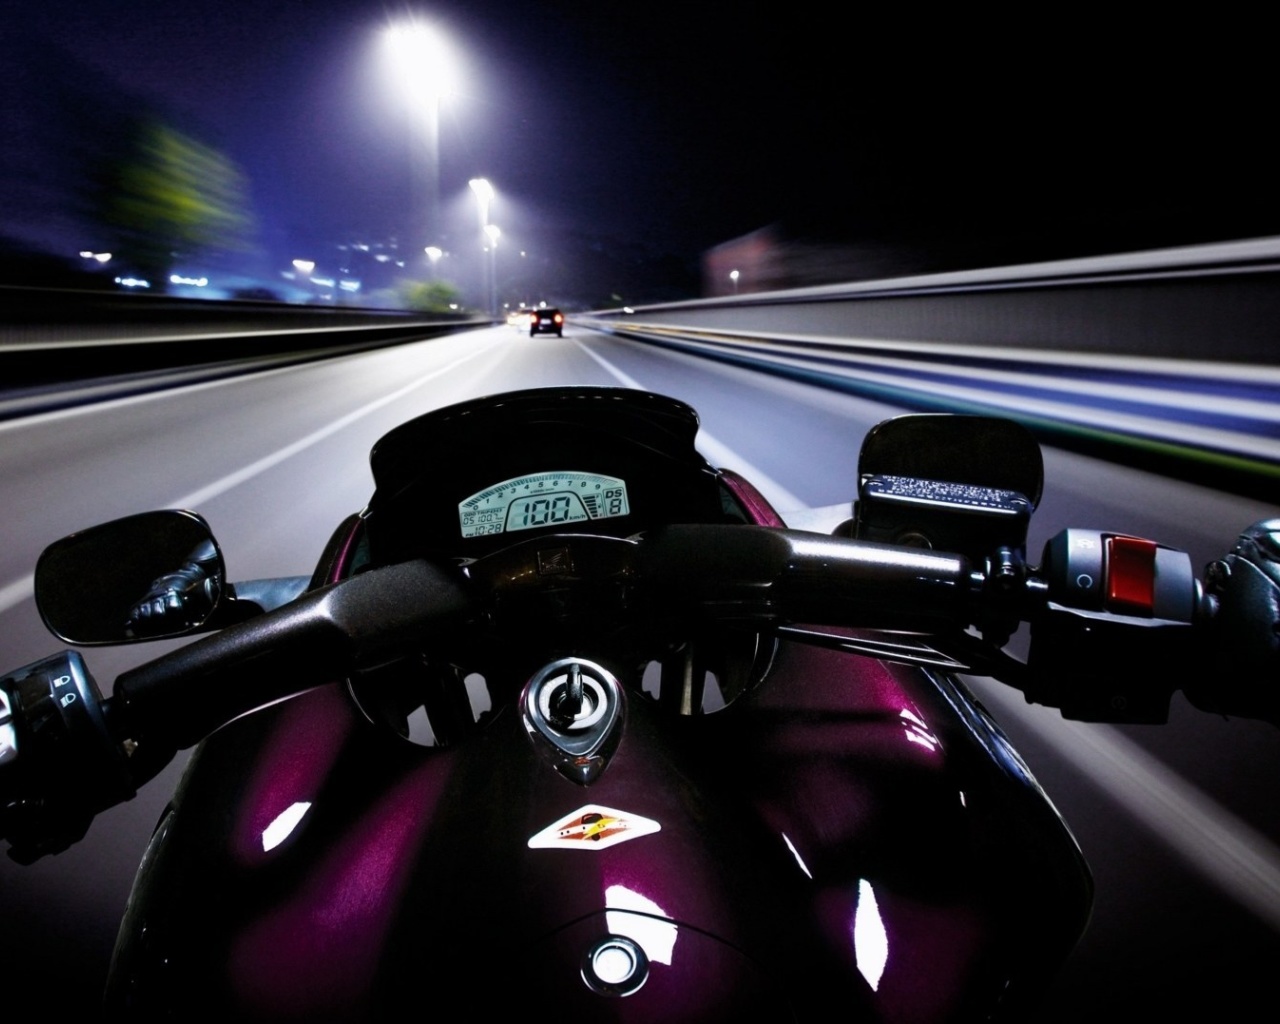 Motorcycle speedway screenshot #1 1280x1024